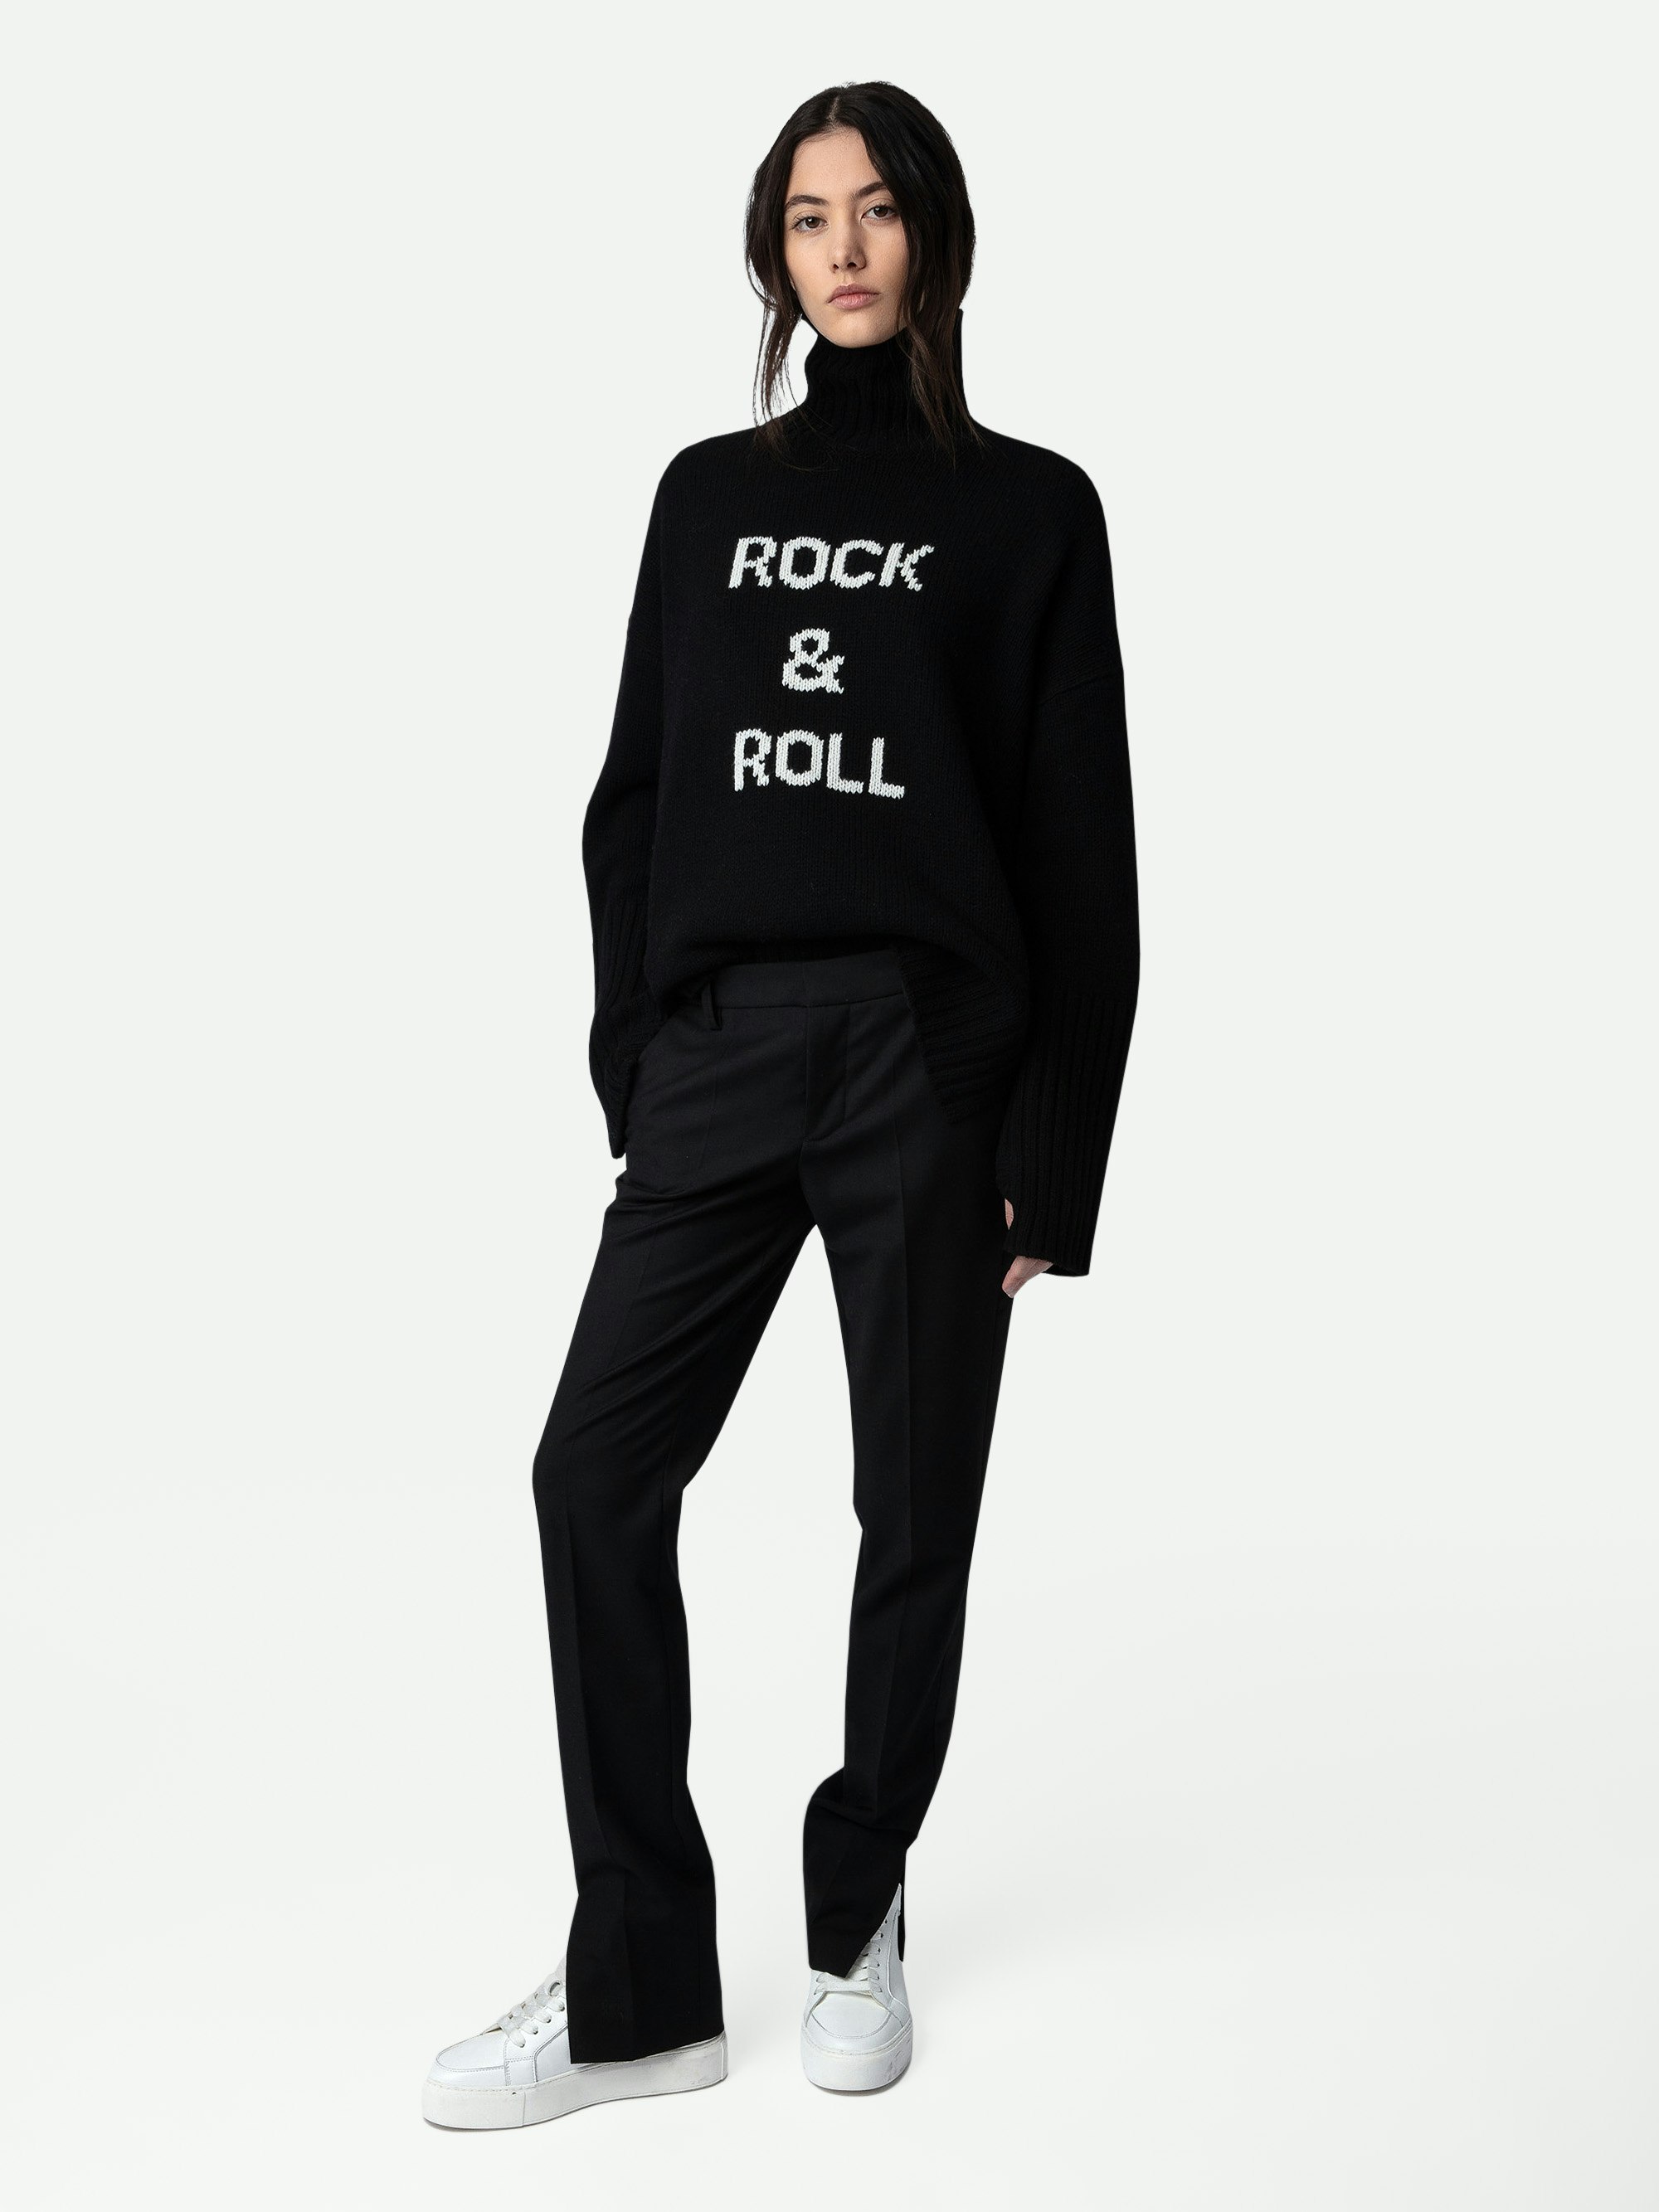 Jersey Alma Rock & Roll 100% Lana - Jersey negro de cuello vuelto para mujer con mensaje